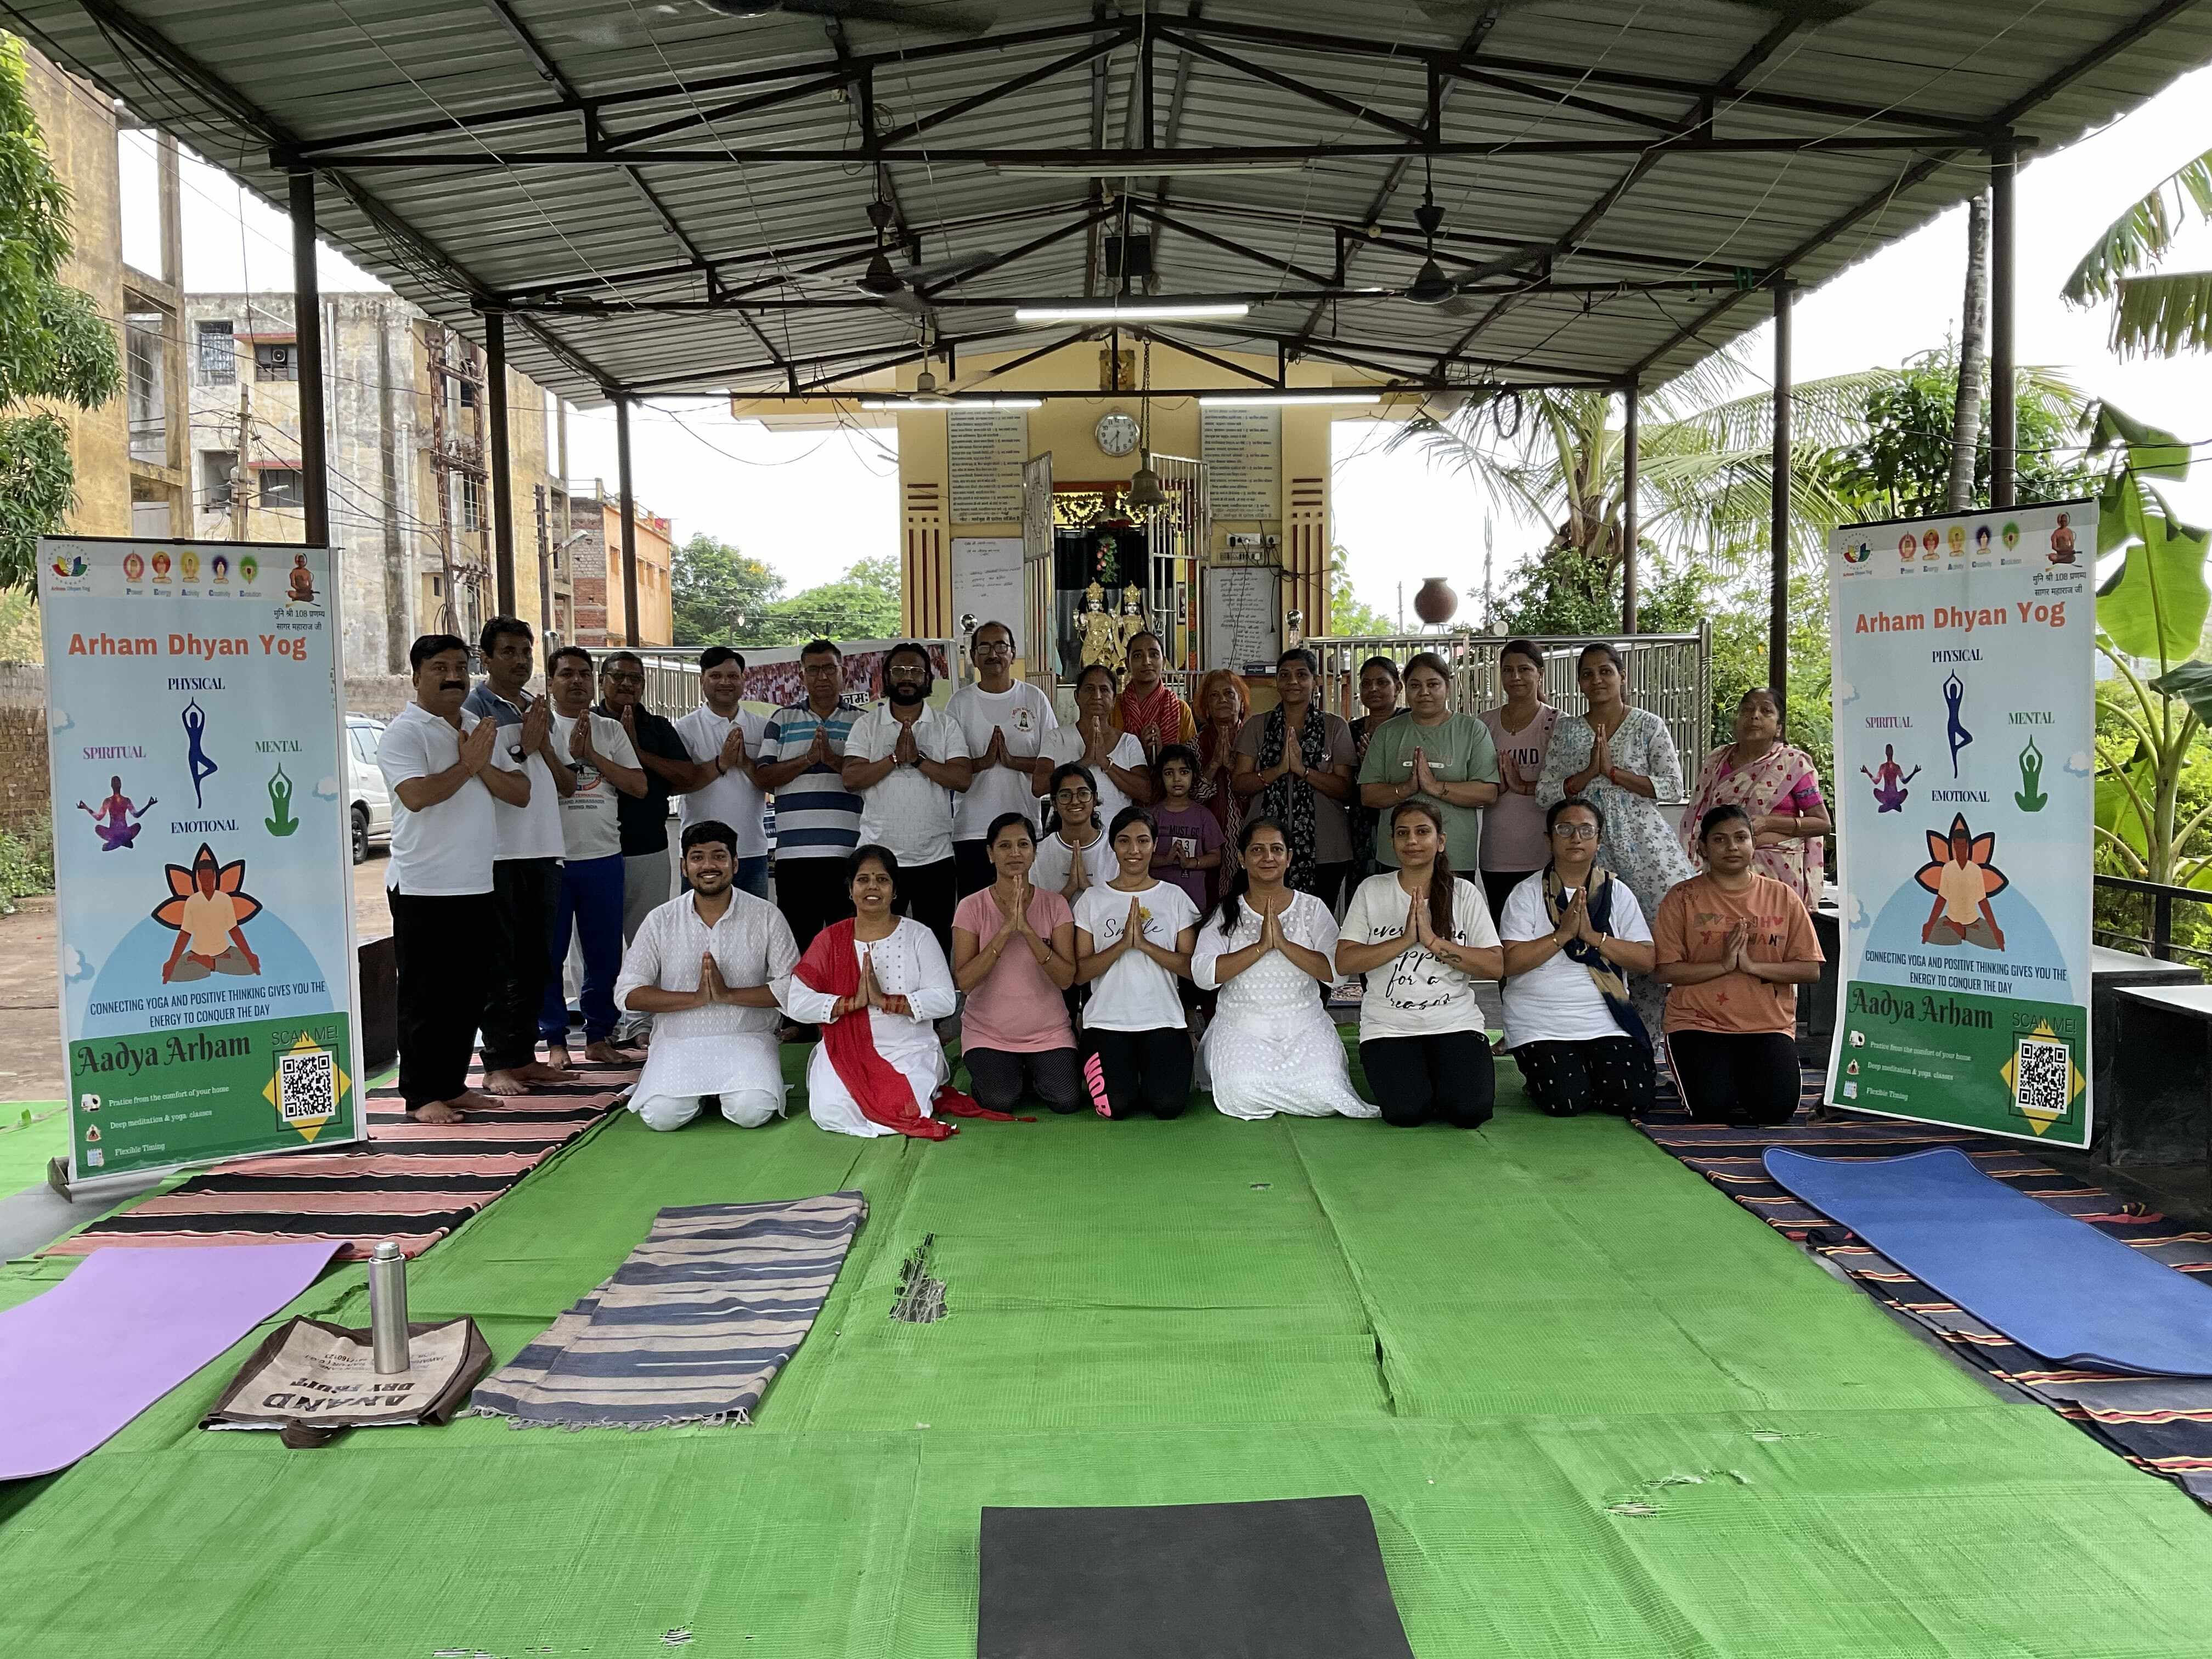 Arjun Enclave में अंतरराष्ट्रीय योग दिवस पर अर्हम ध्यान योग शिविर का आयोजन